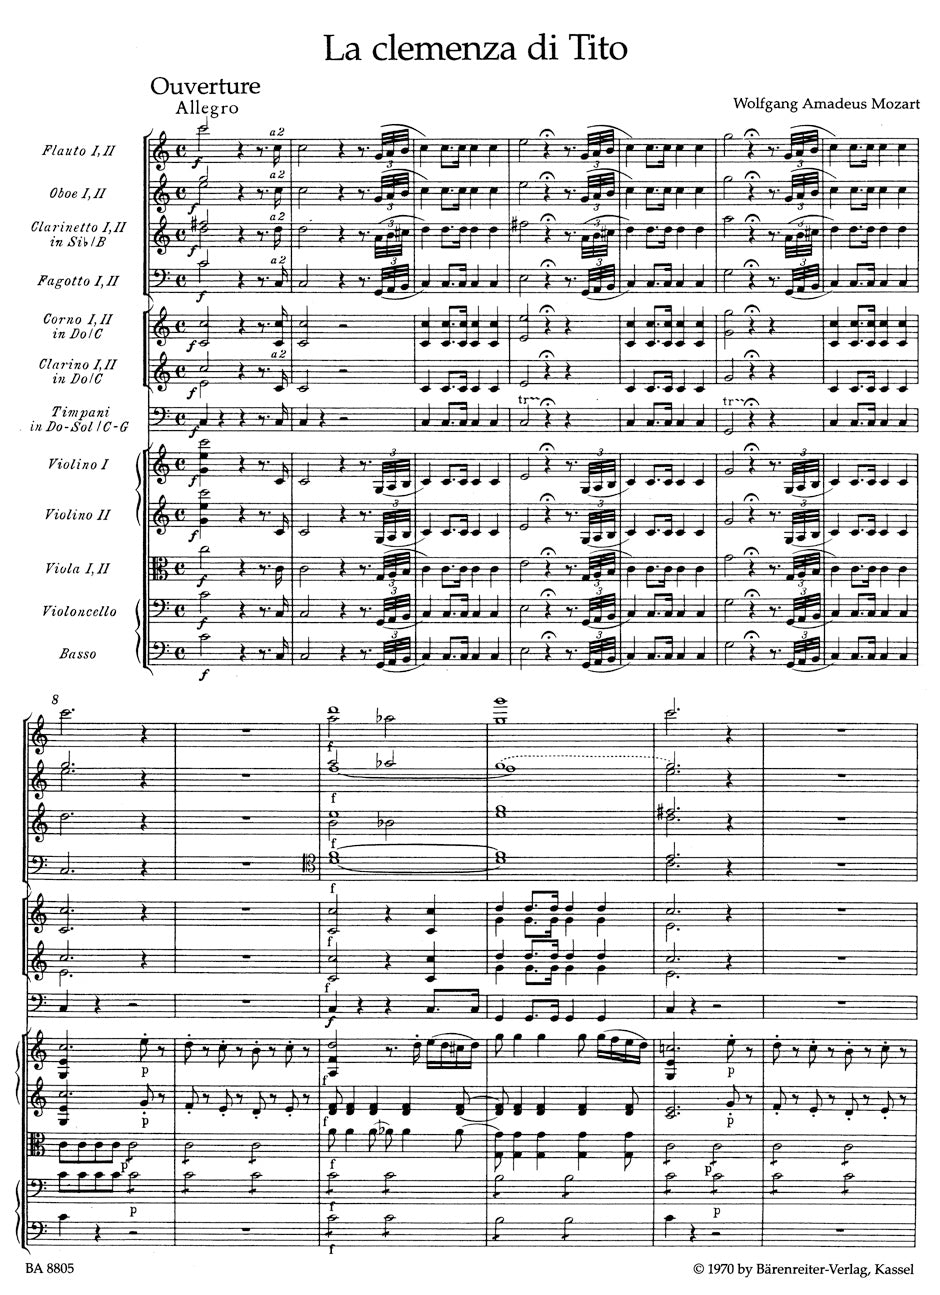 Mozart La clemenza di Tito KV 621 -Ouverture-